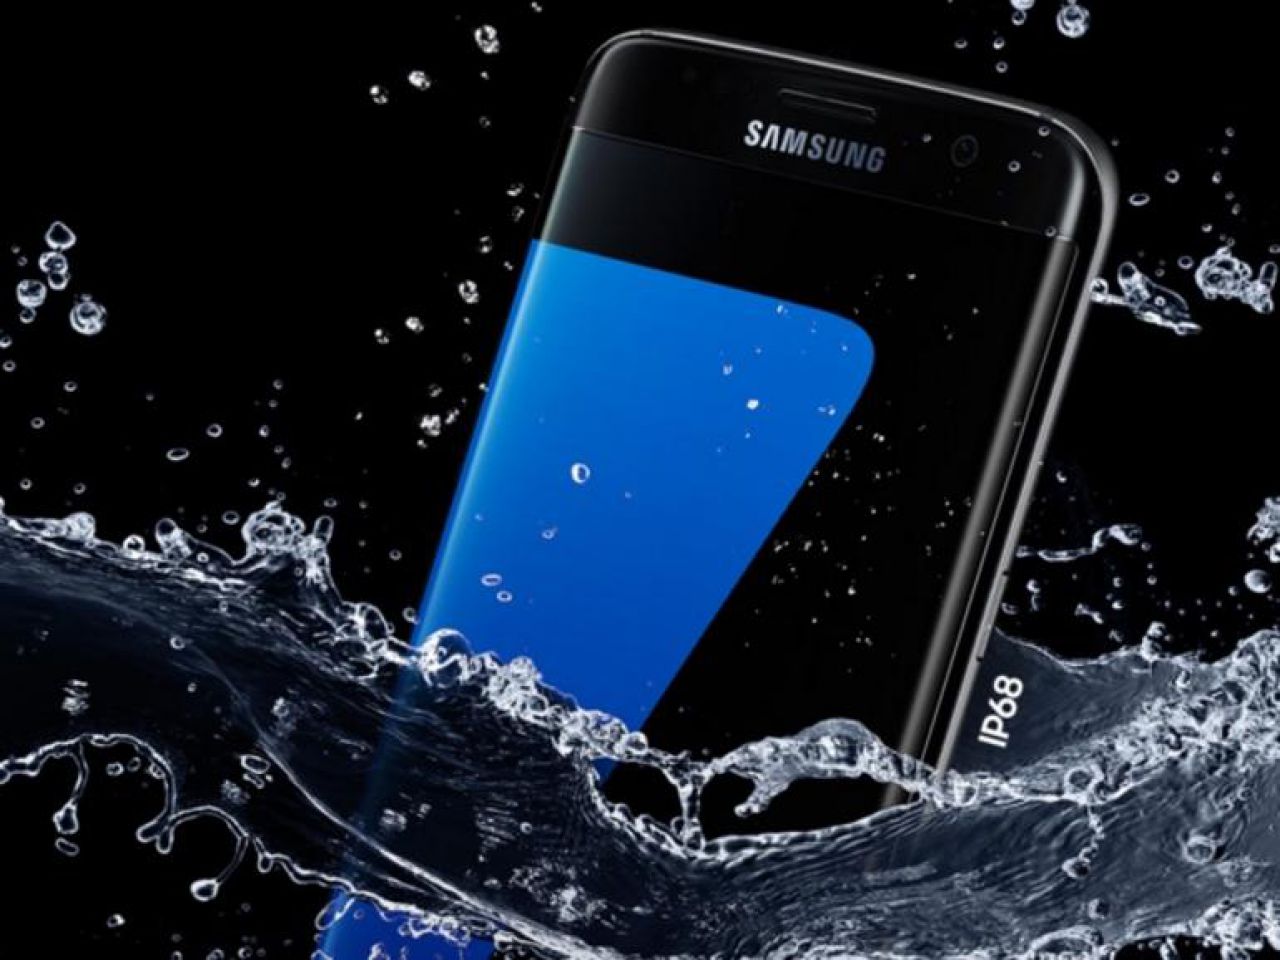 Samsung bị tố quảng
cáo sai sự thật về khả năng chống nước trên các mẫu flagship
Galaxy S ra mắt từ năm 2016 đến nay